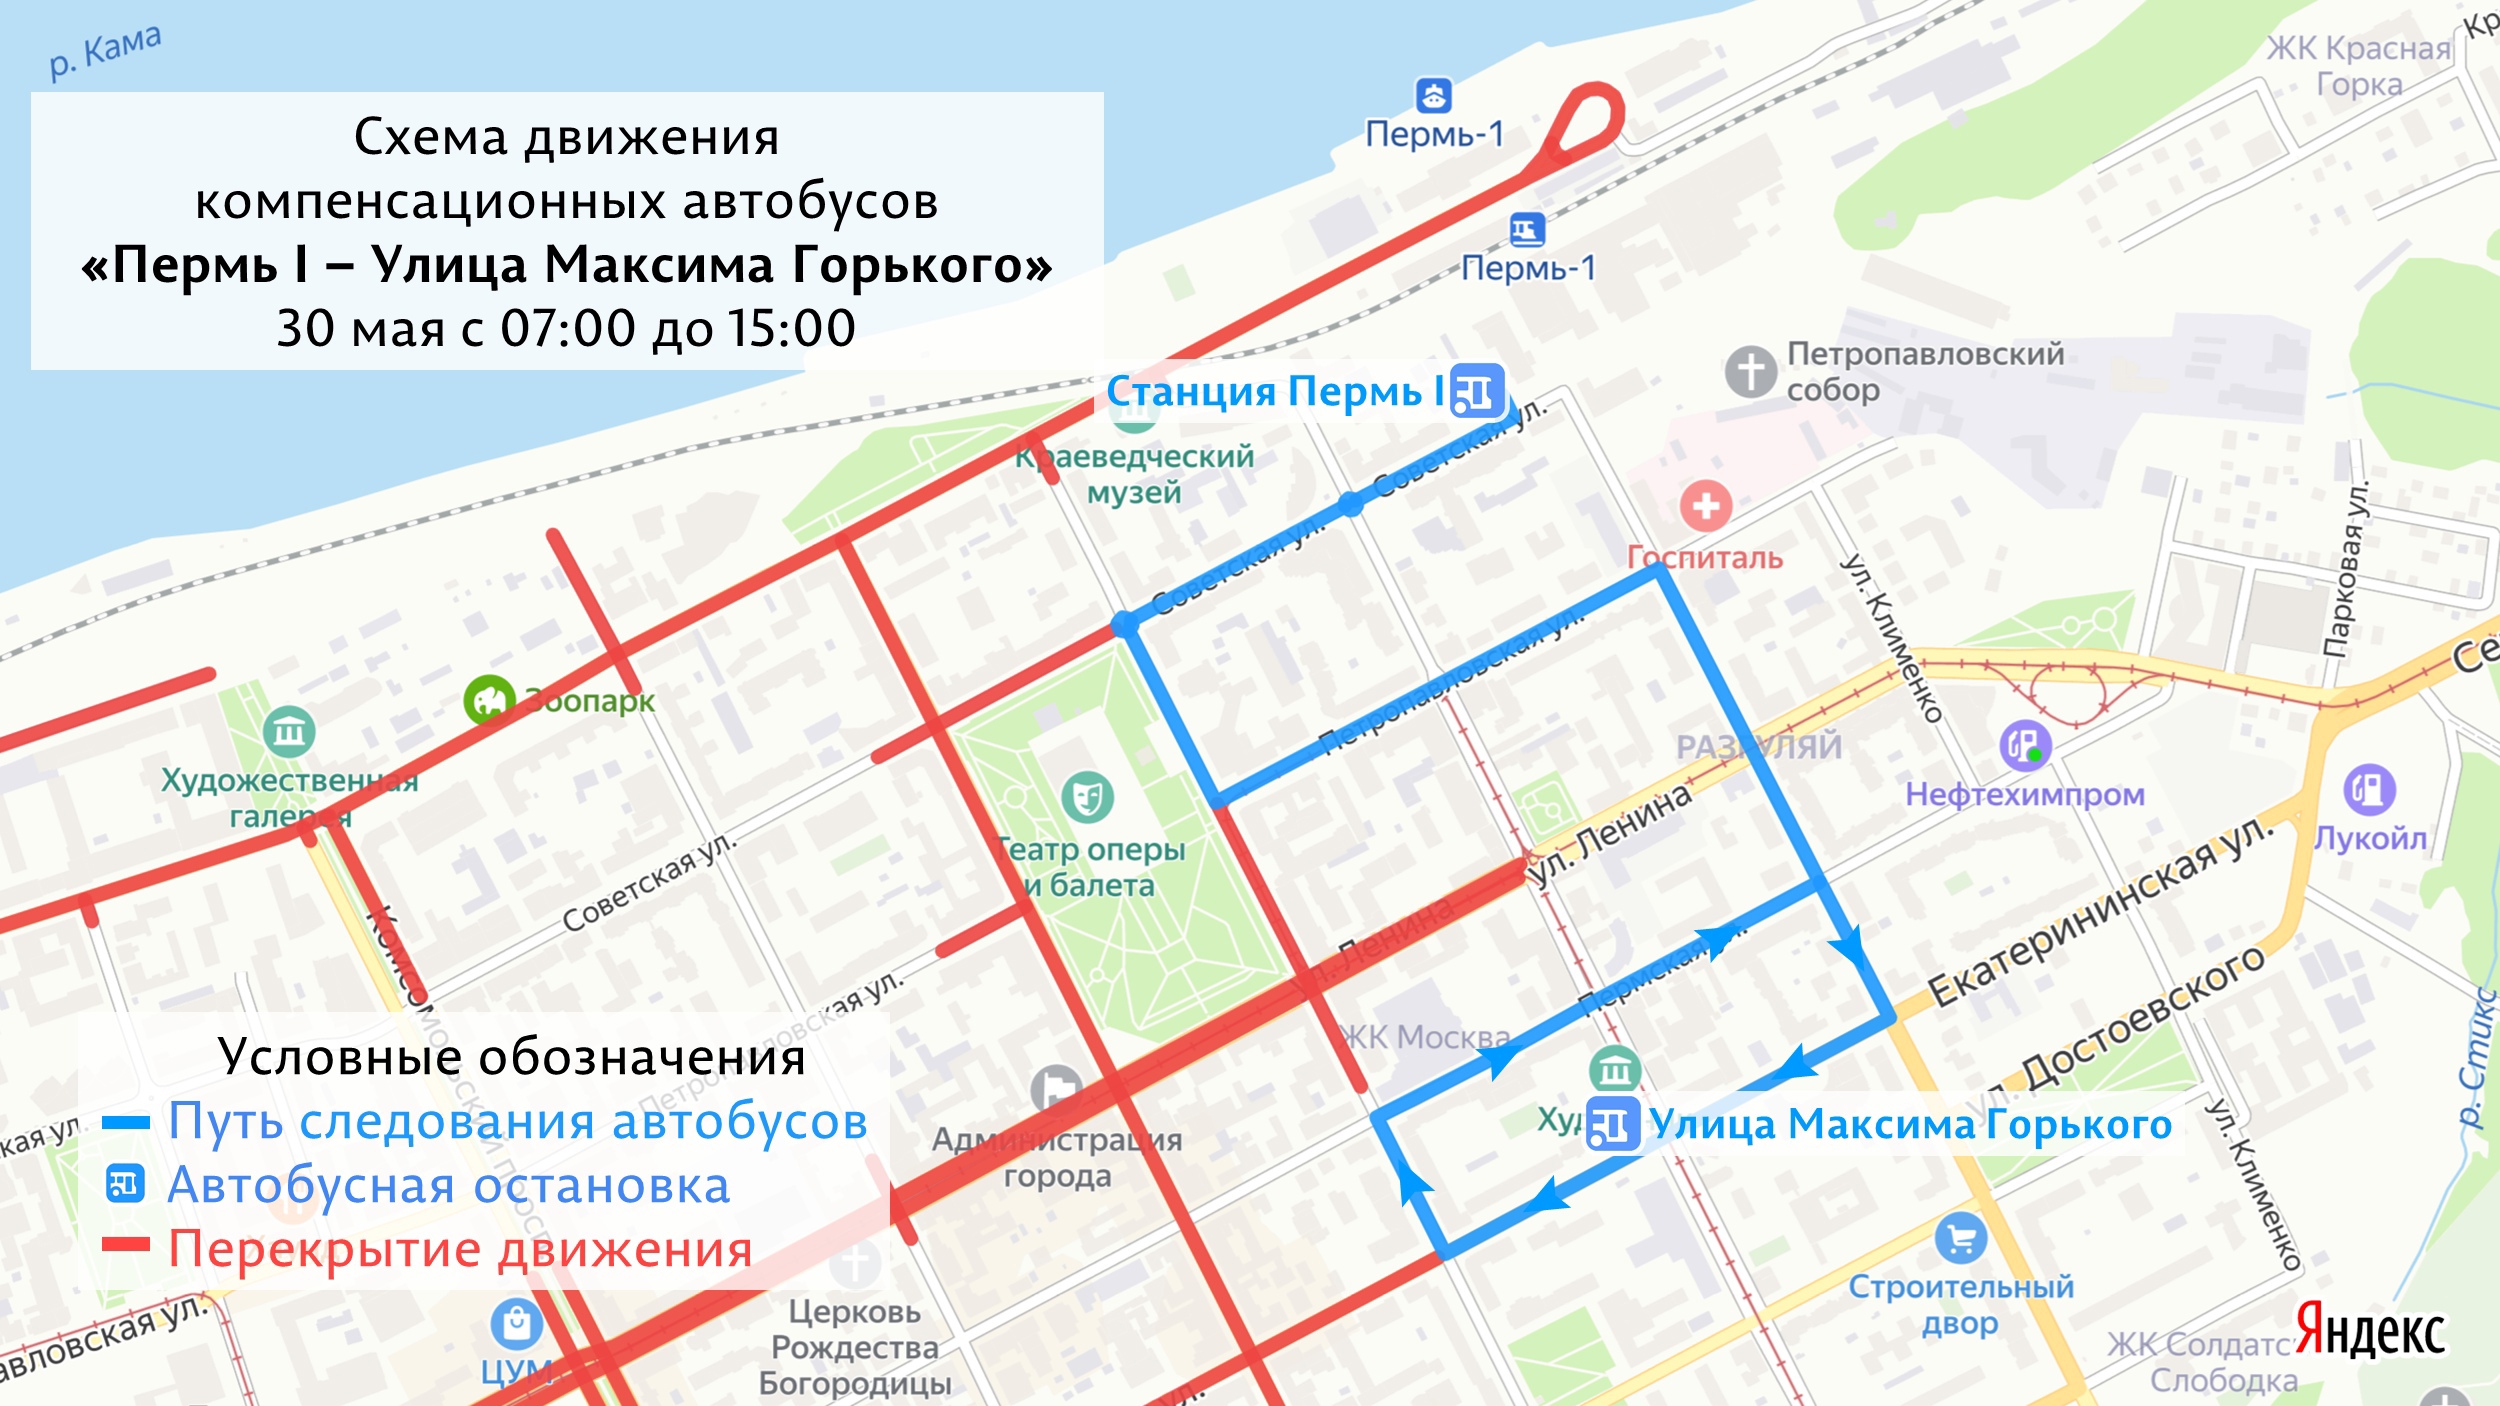 Транспортную связь с Пермью I обеспечат компенсационные автобусы